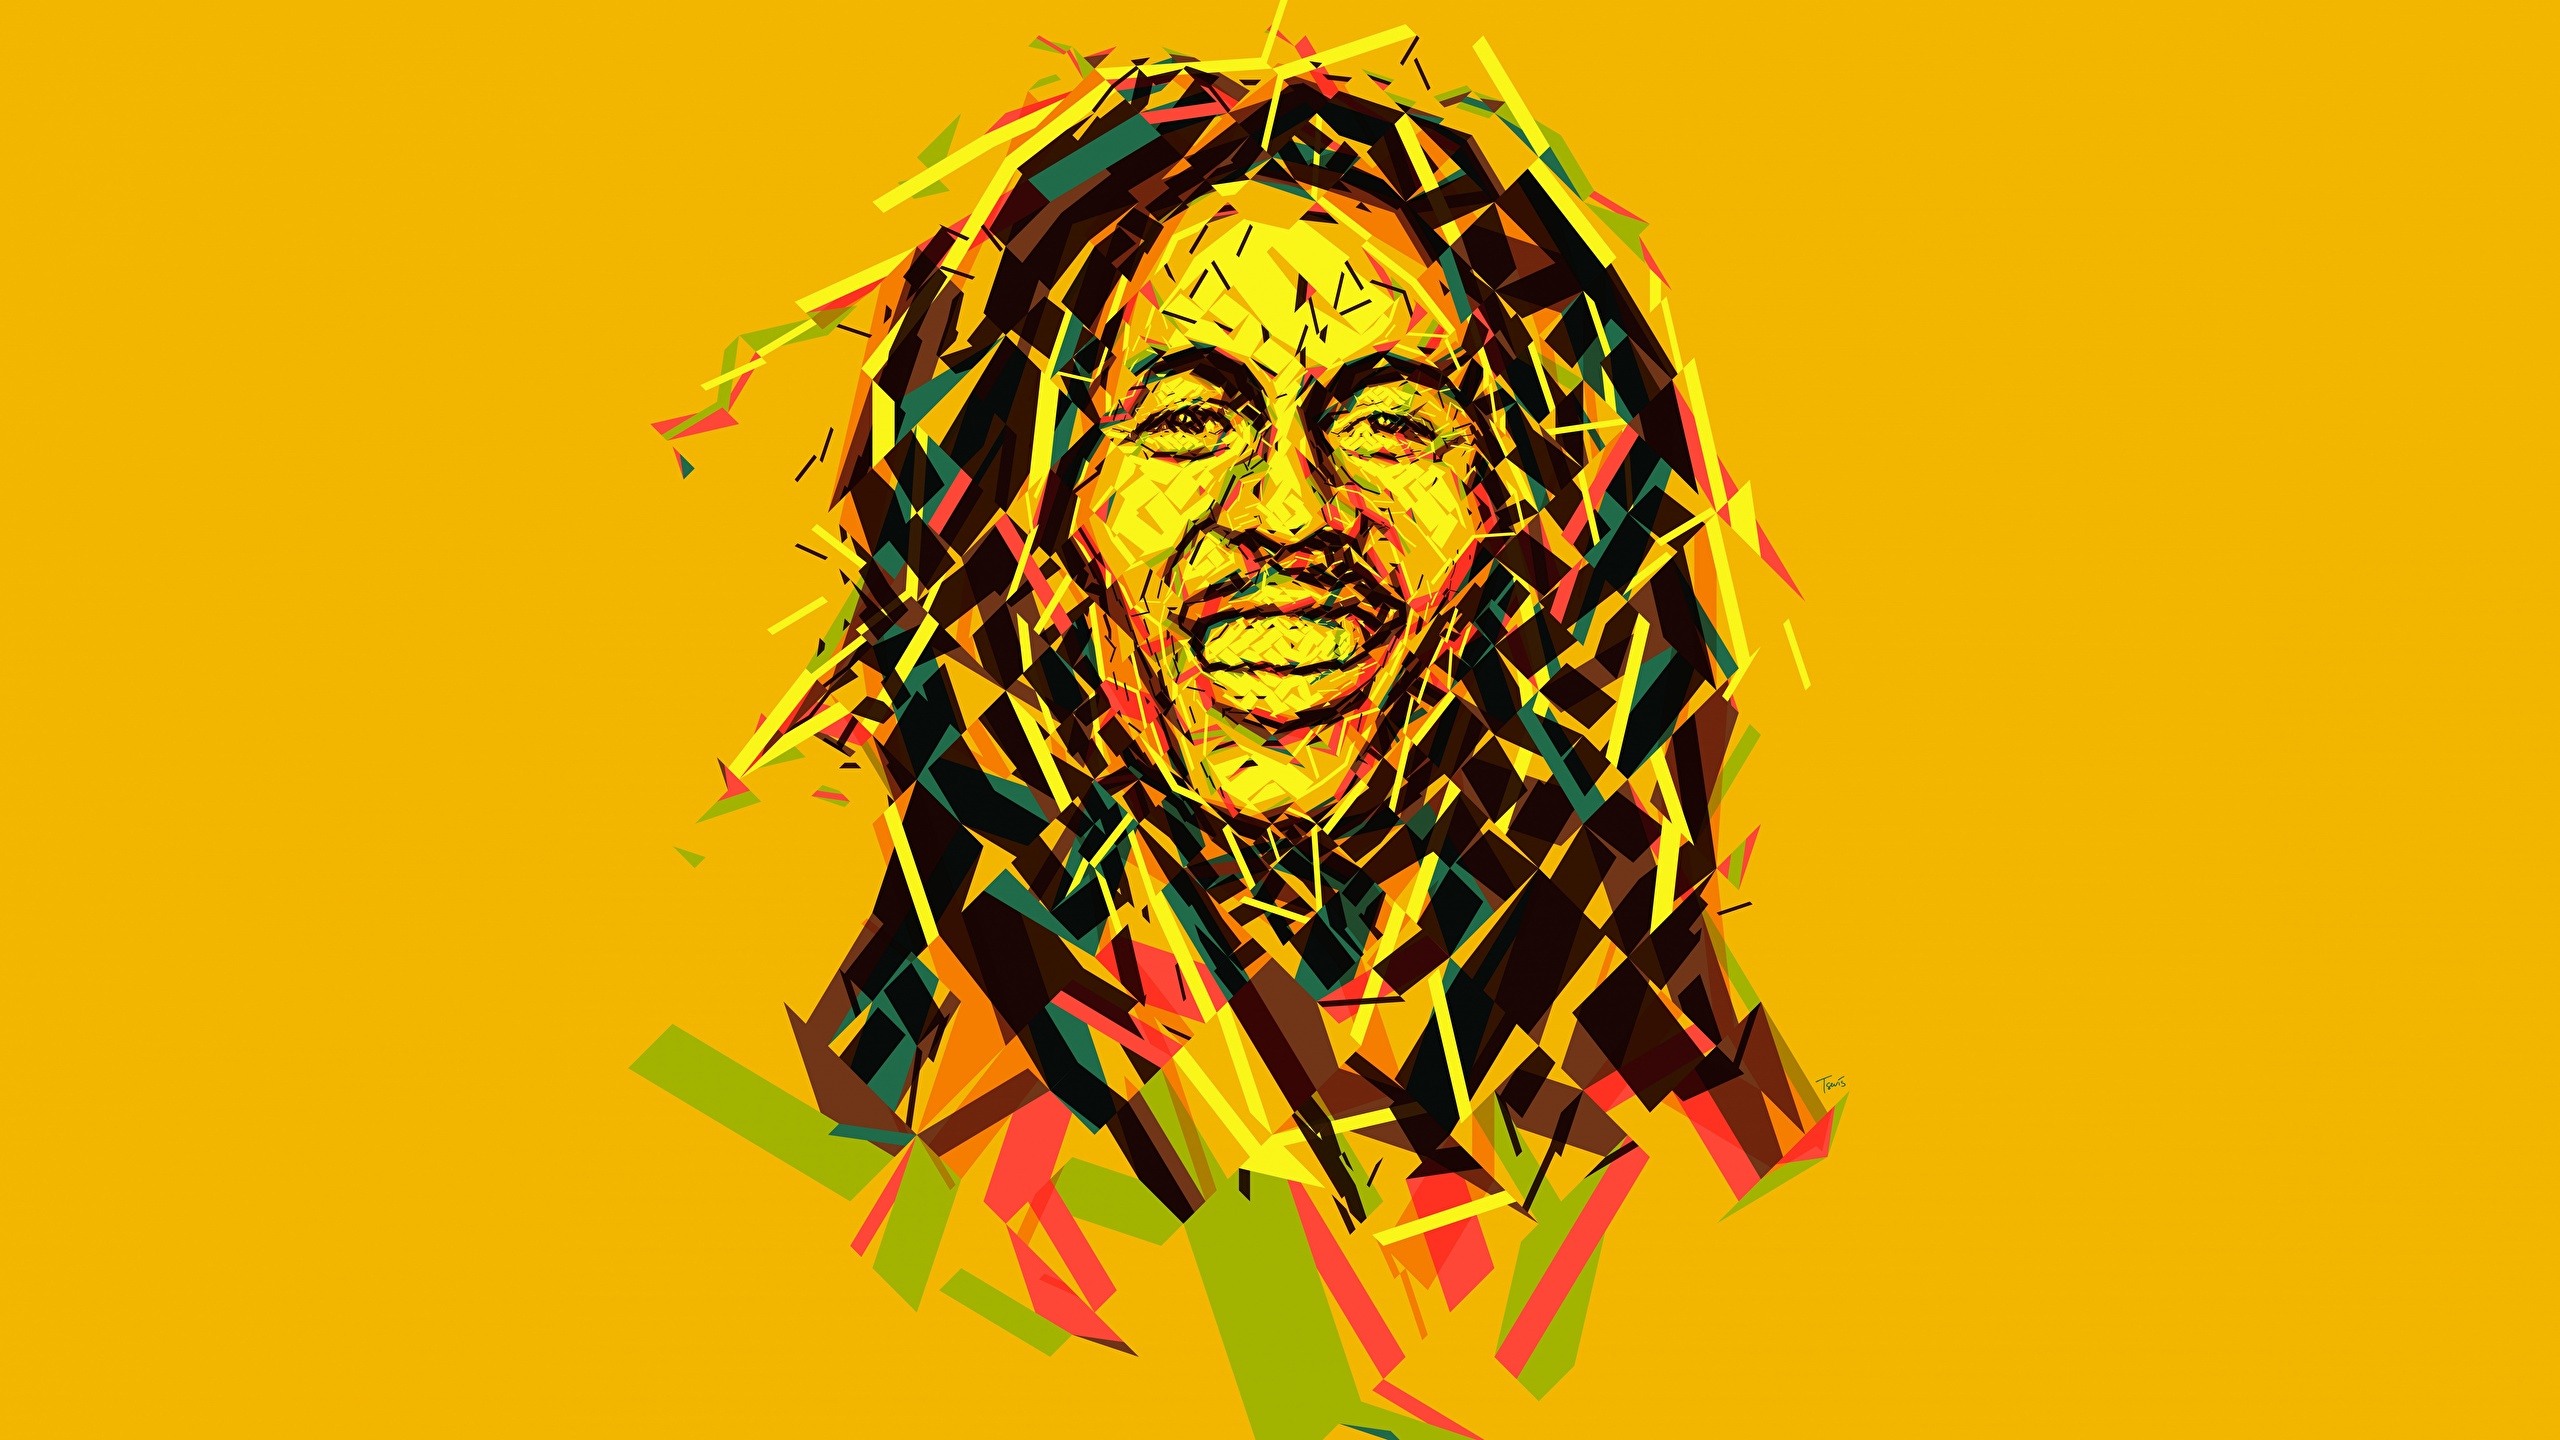 Bob Marley Векторная графика Цветной фон Знаменитости фото 2560x1440 обои к...